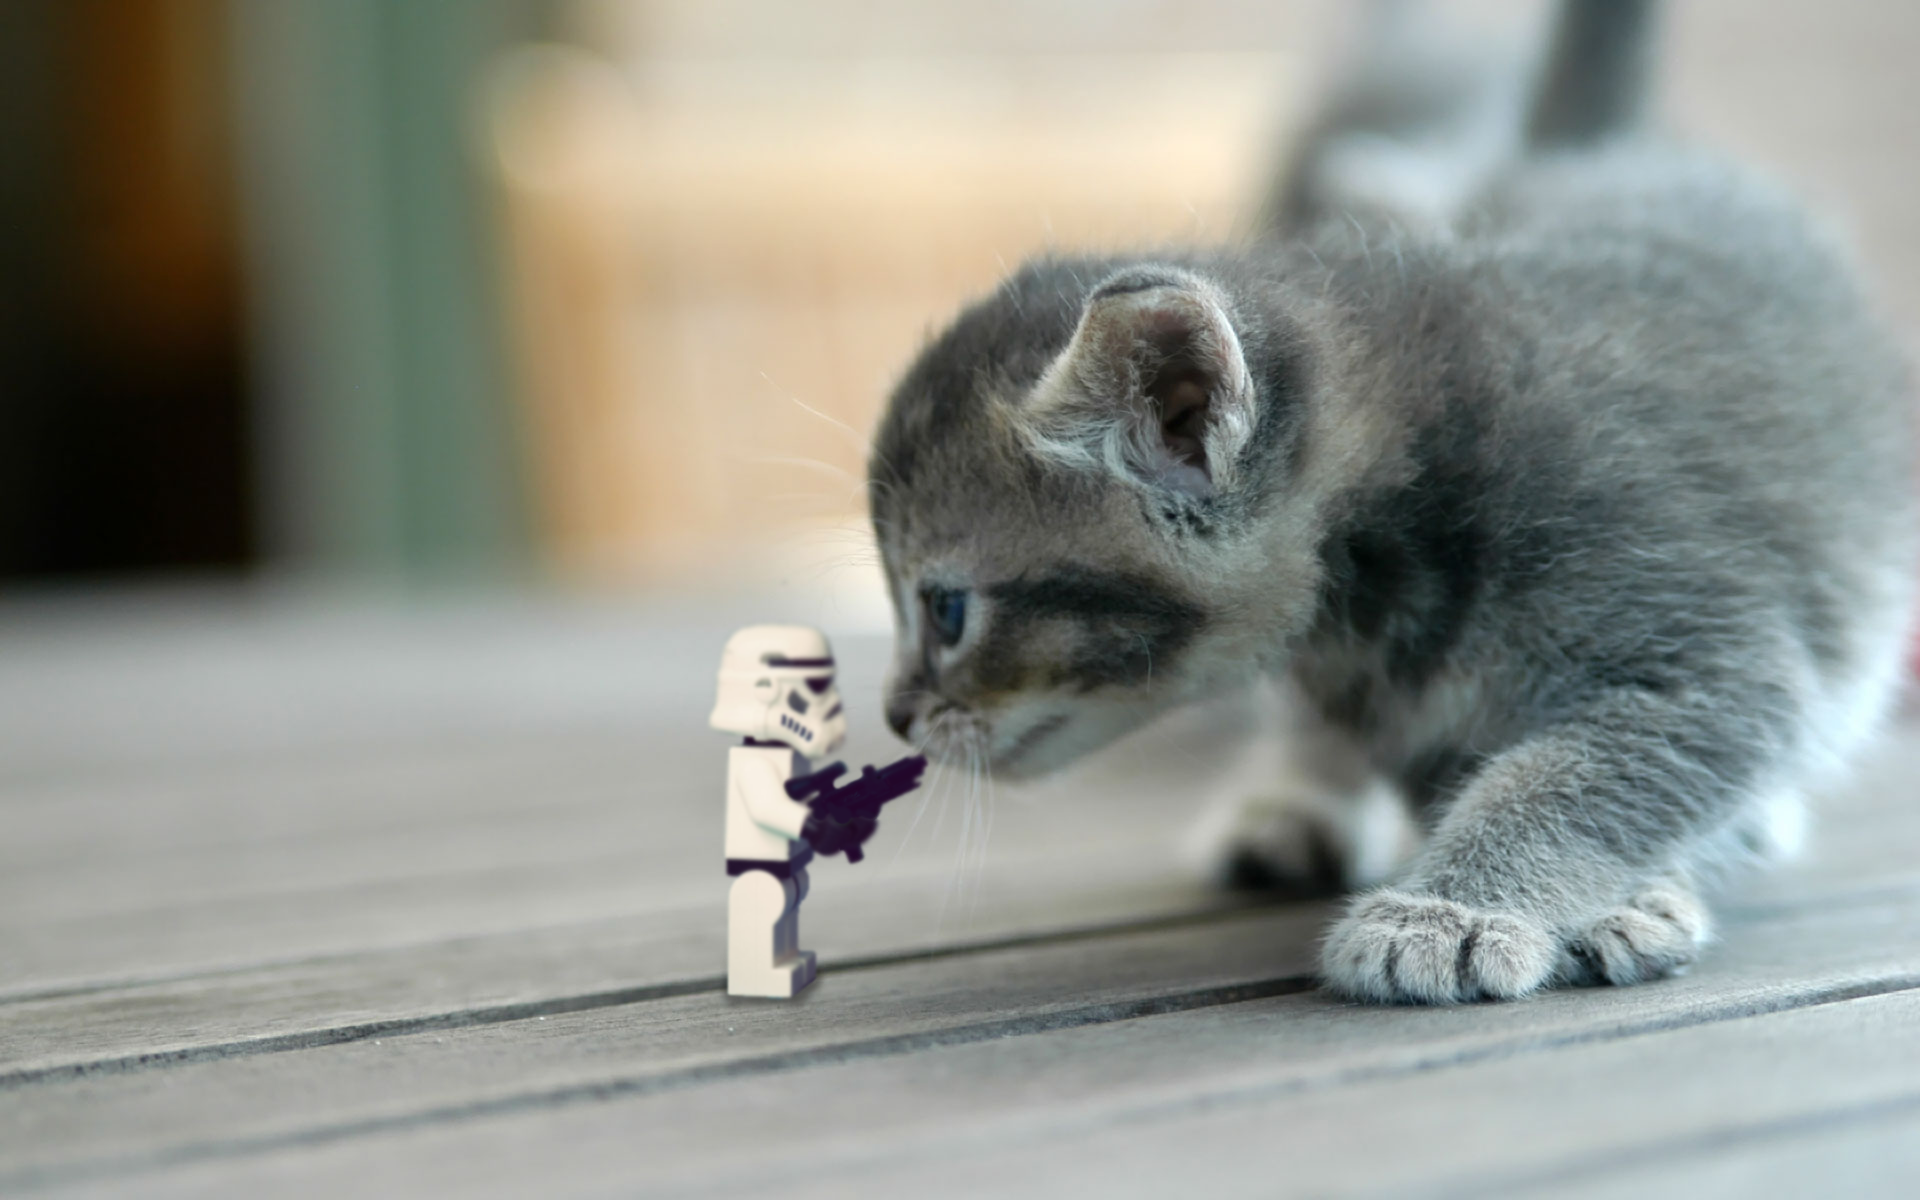 stormtrooper vs cat by Kveldsvanger on